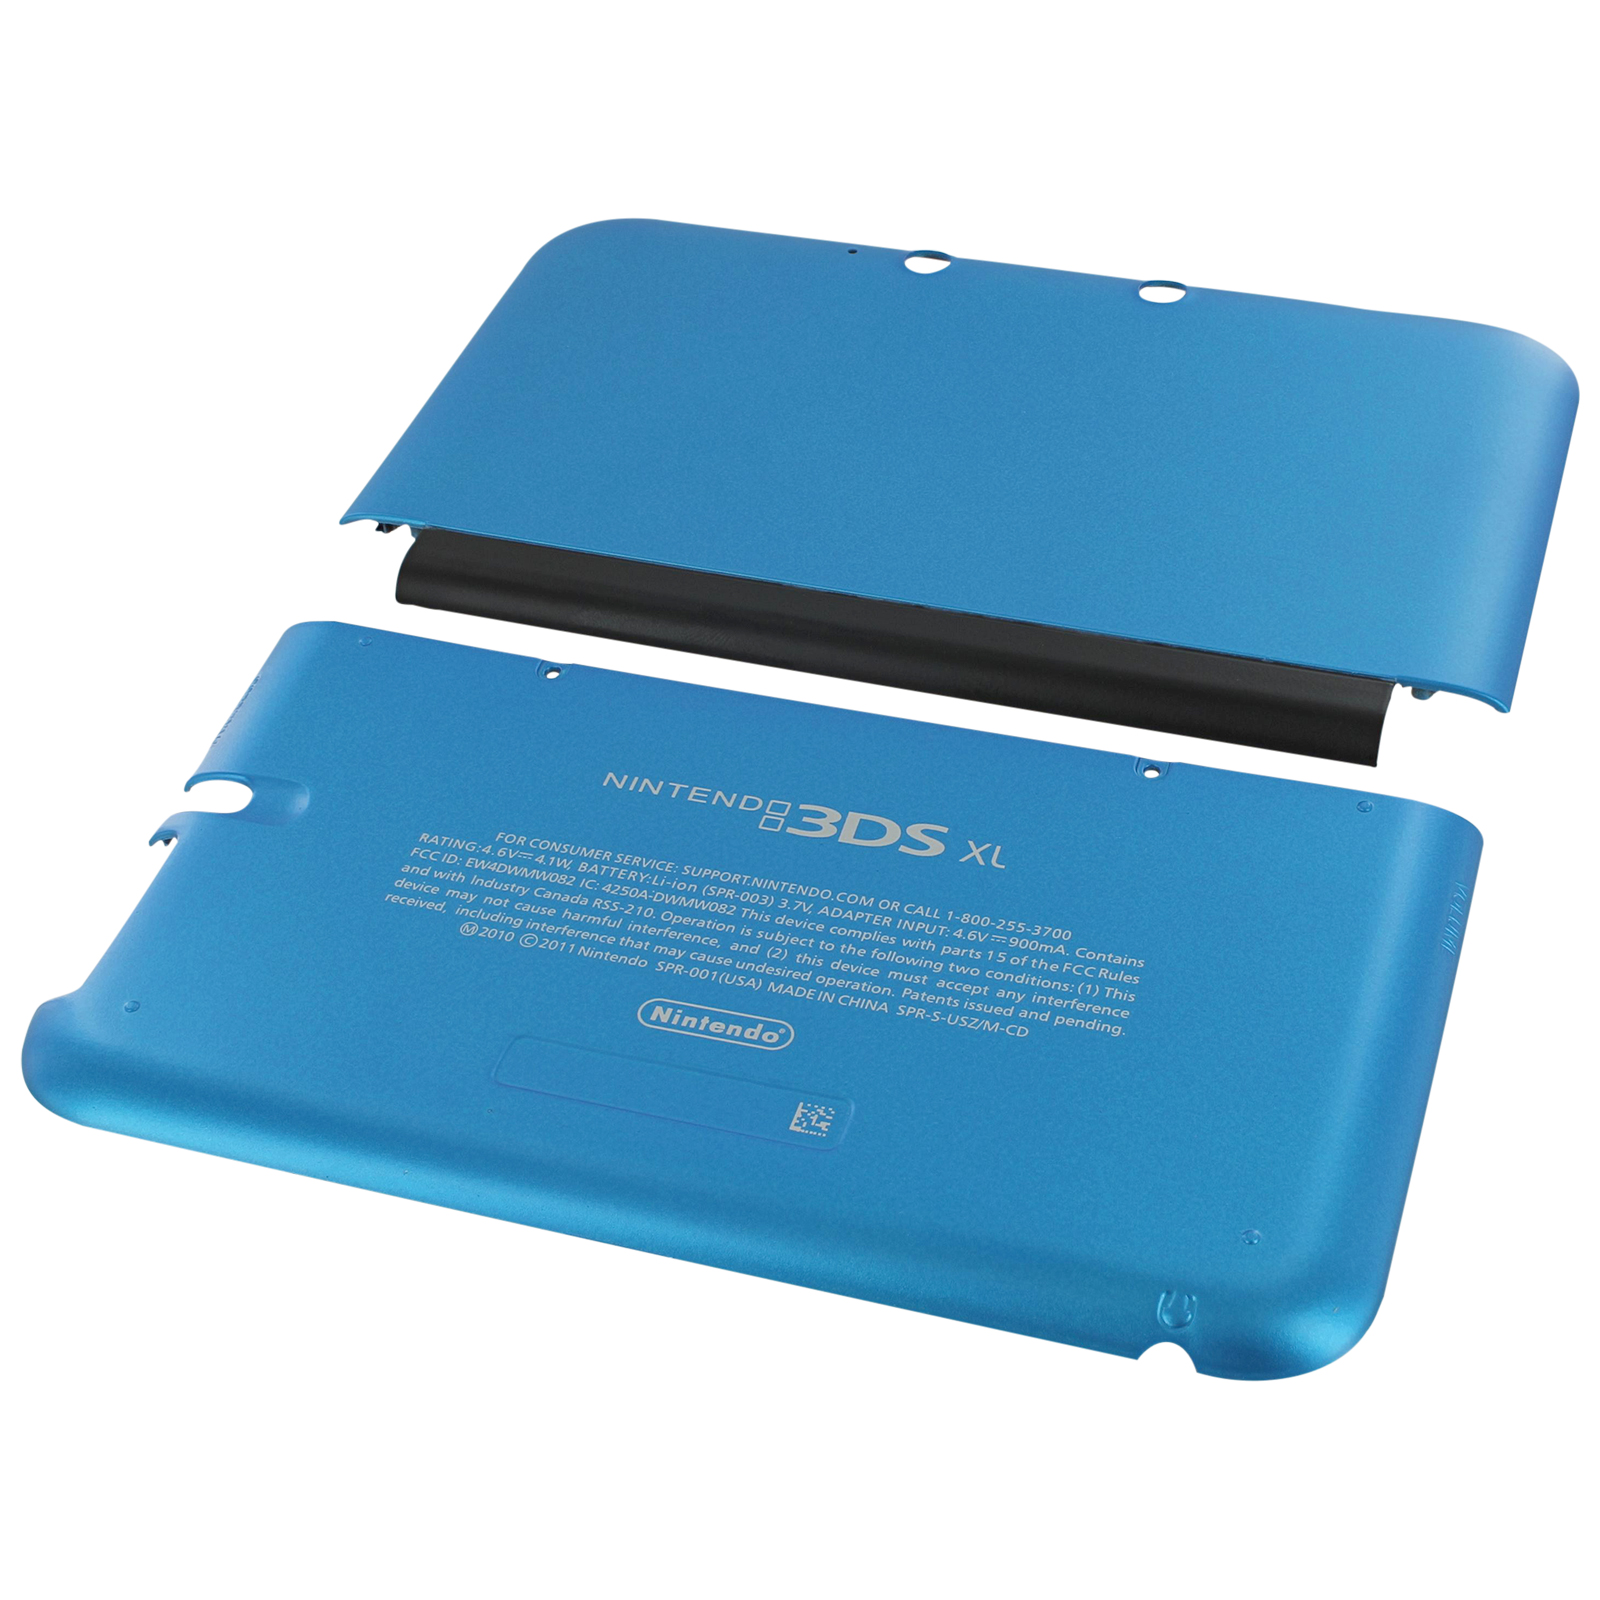 Vær stille Præfiks Dårlig faktor Køb Housing for 3DS XL Nintendo 2012 shell cover plate top bottom kit  ZedLabz blue